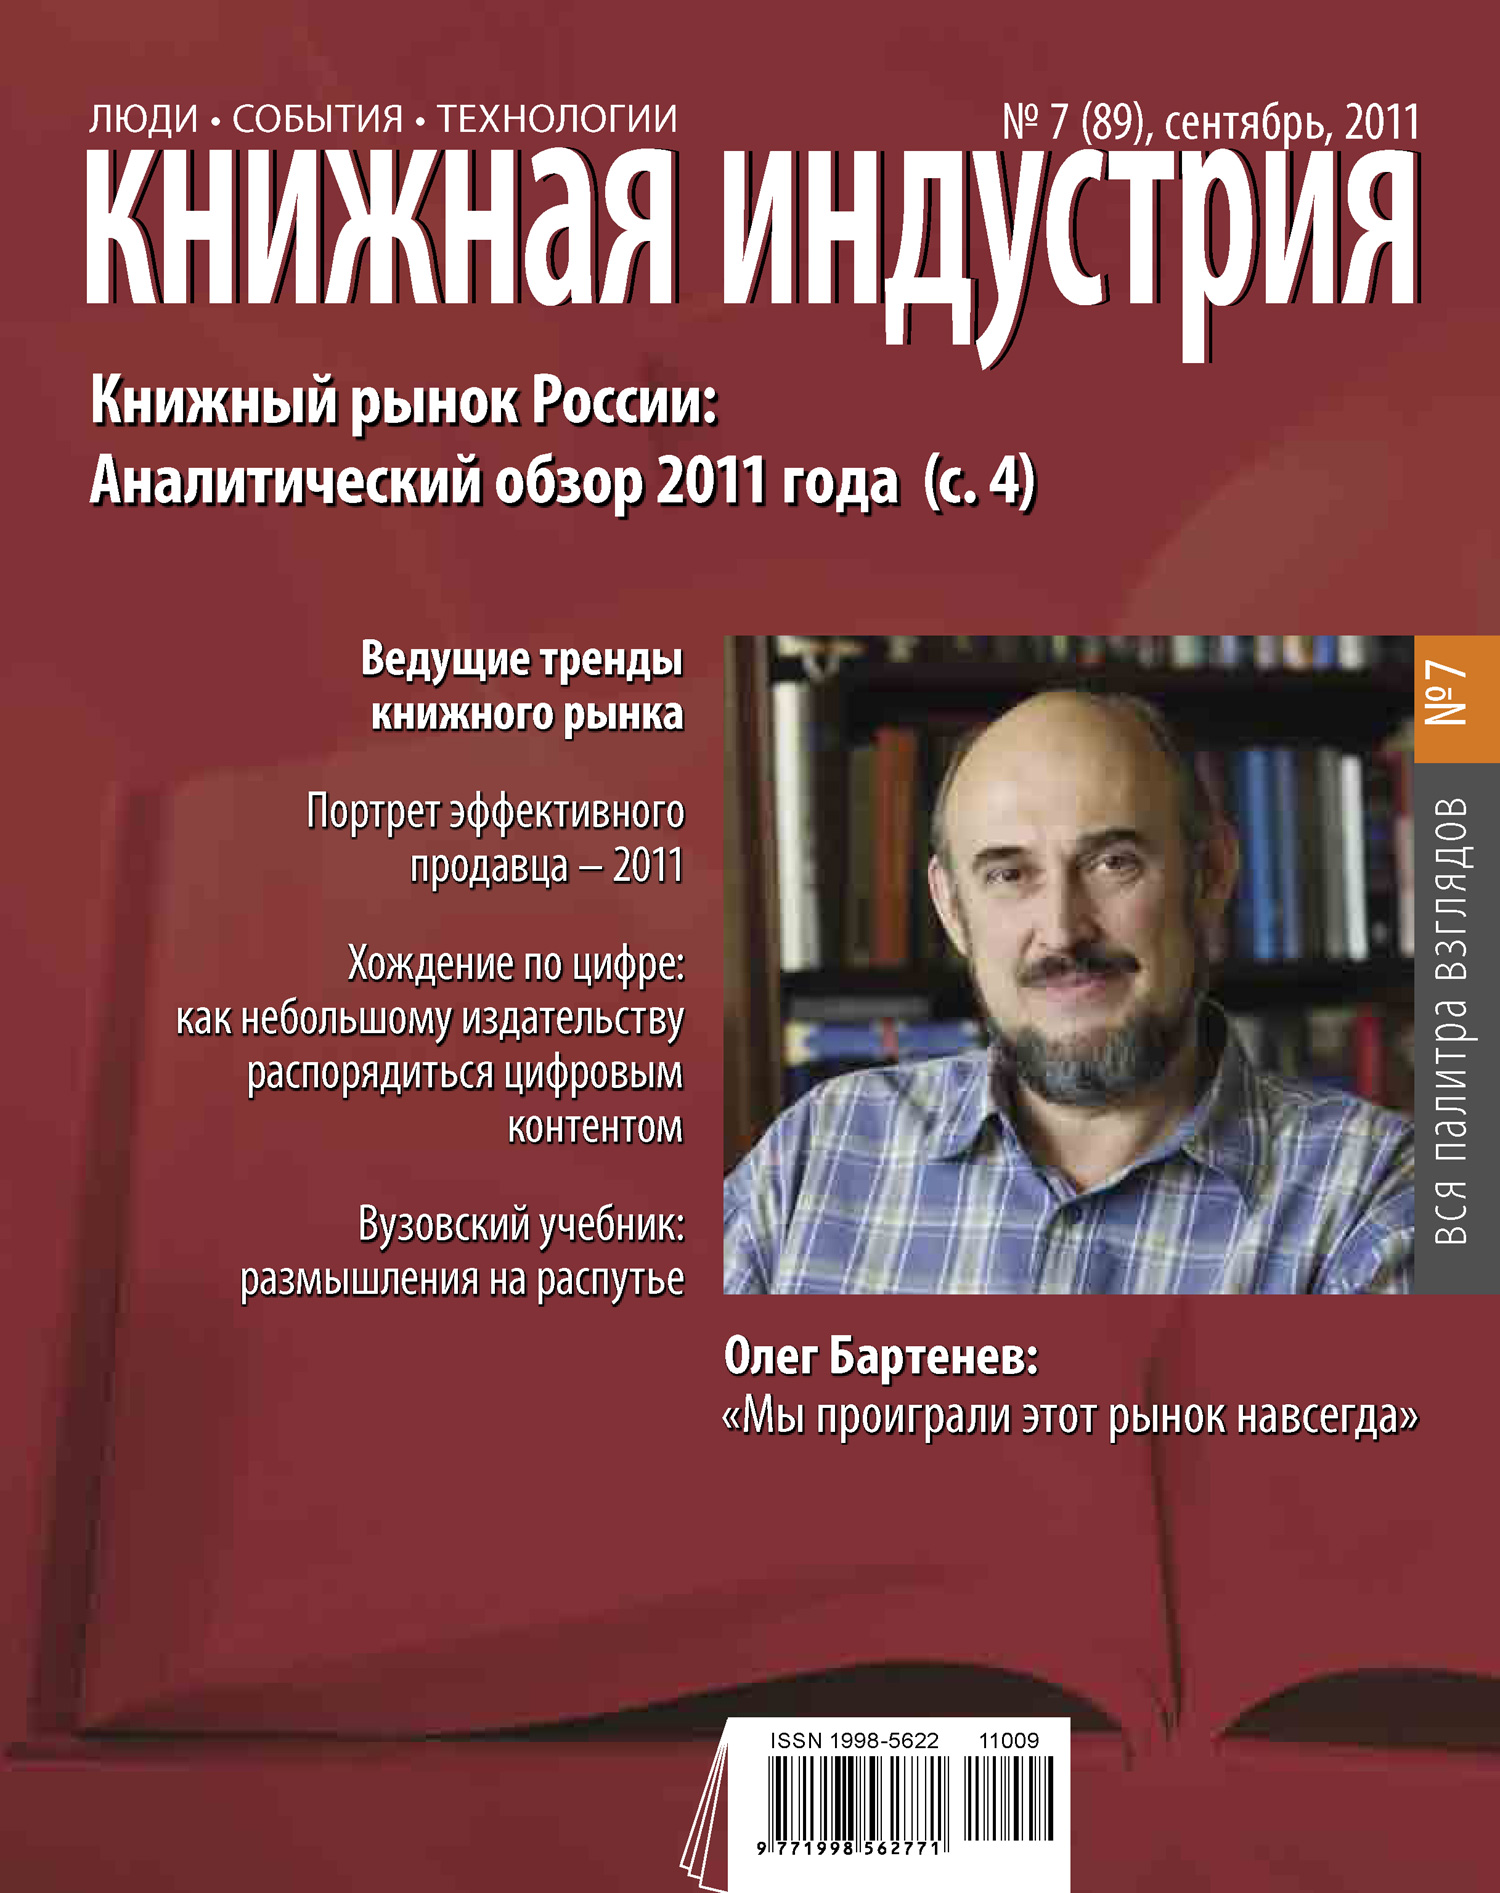 Книжная индустрия № 07 (сентябрь) 2011